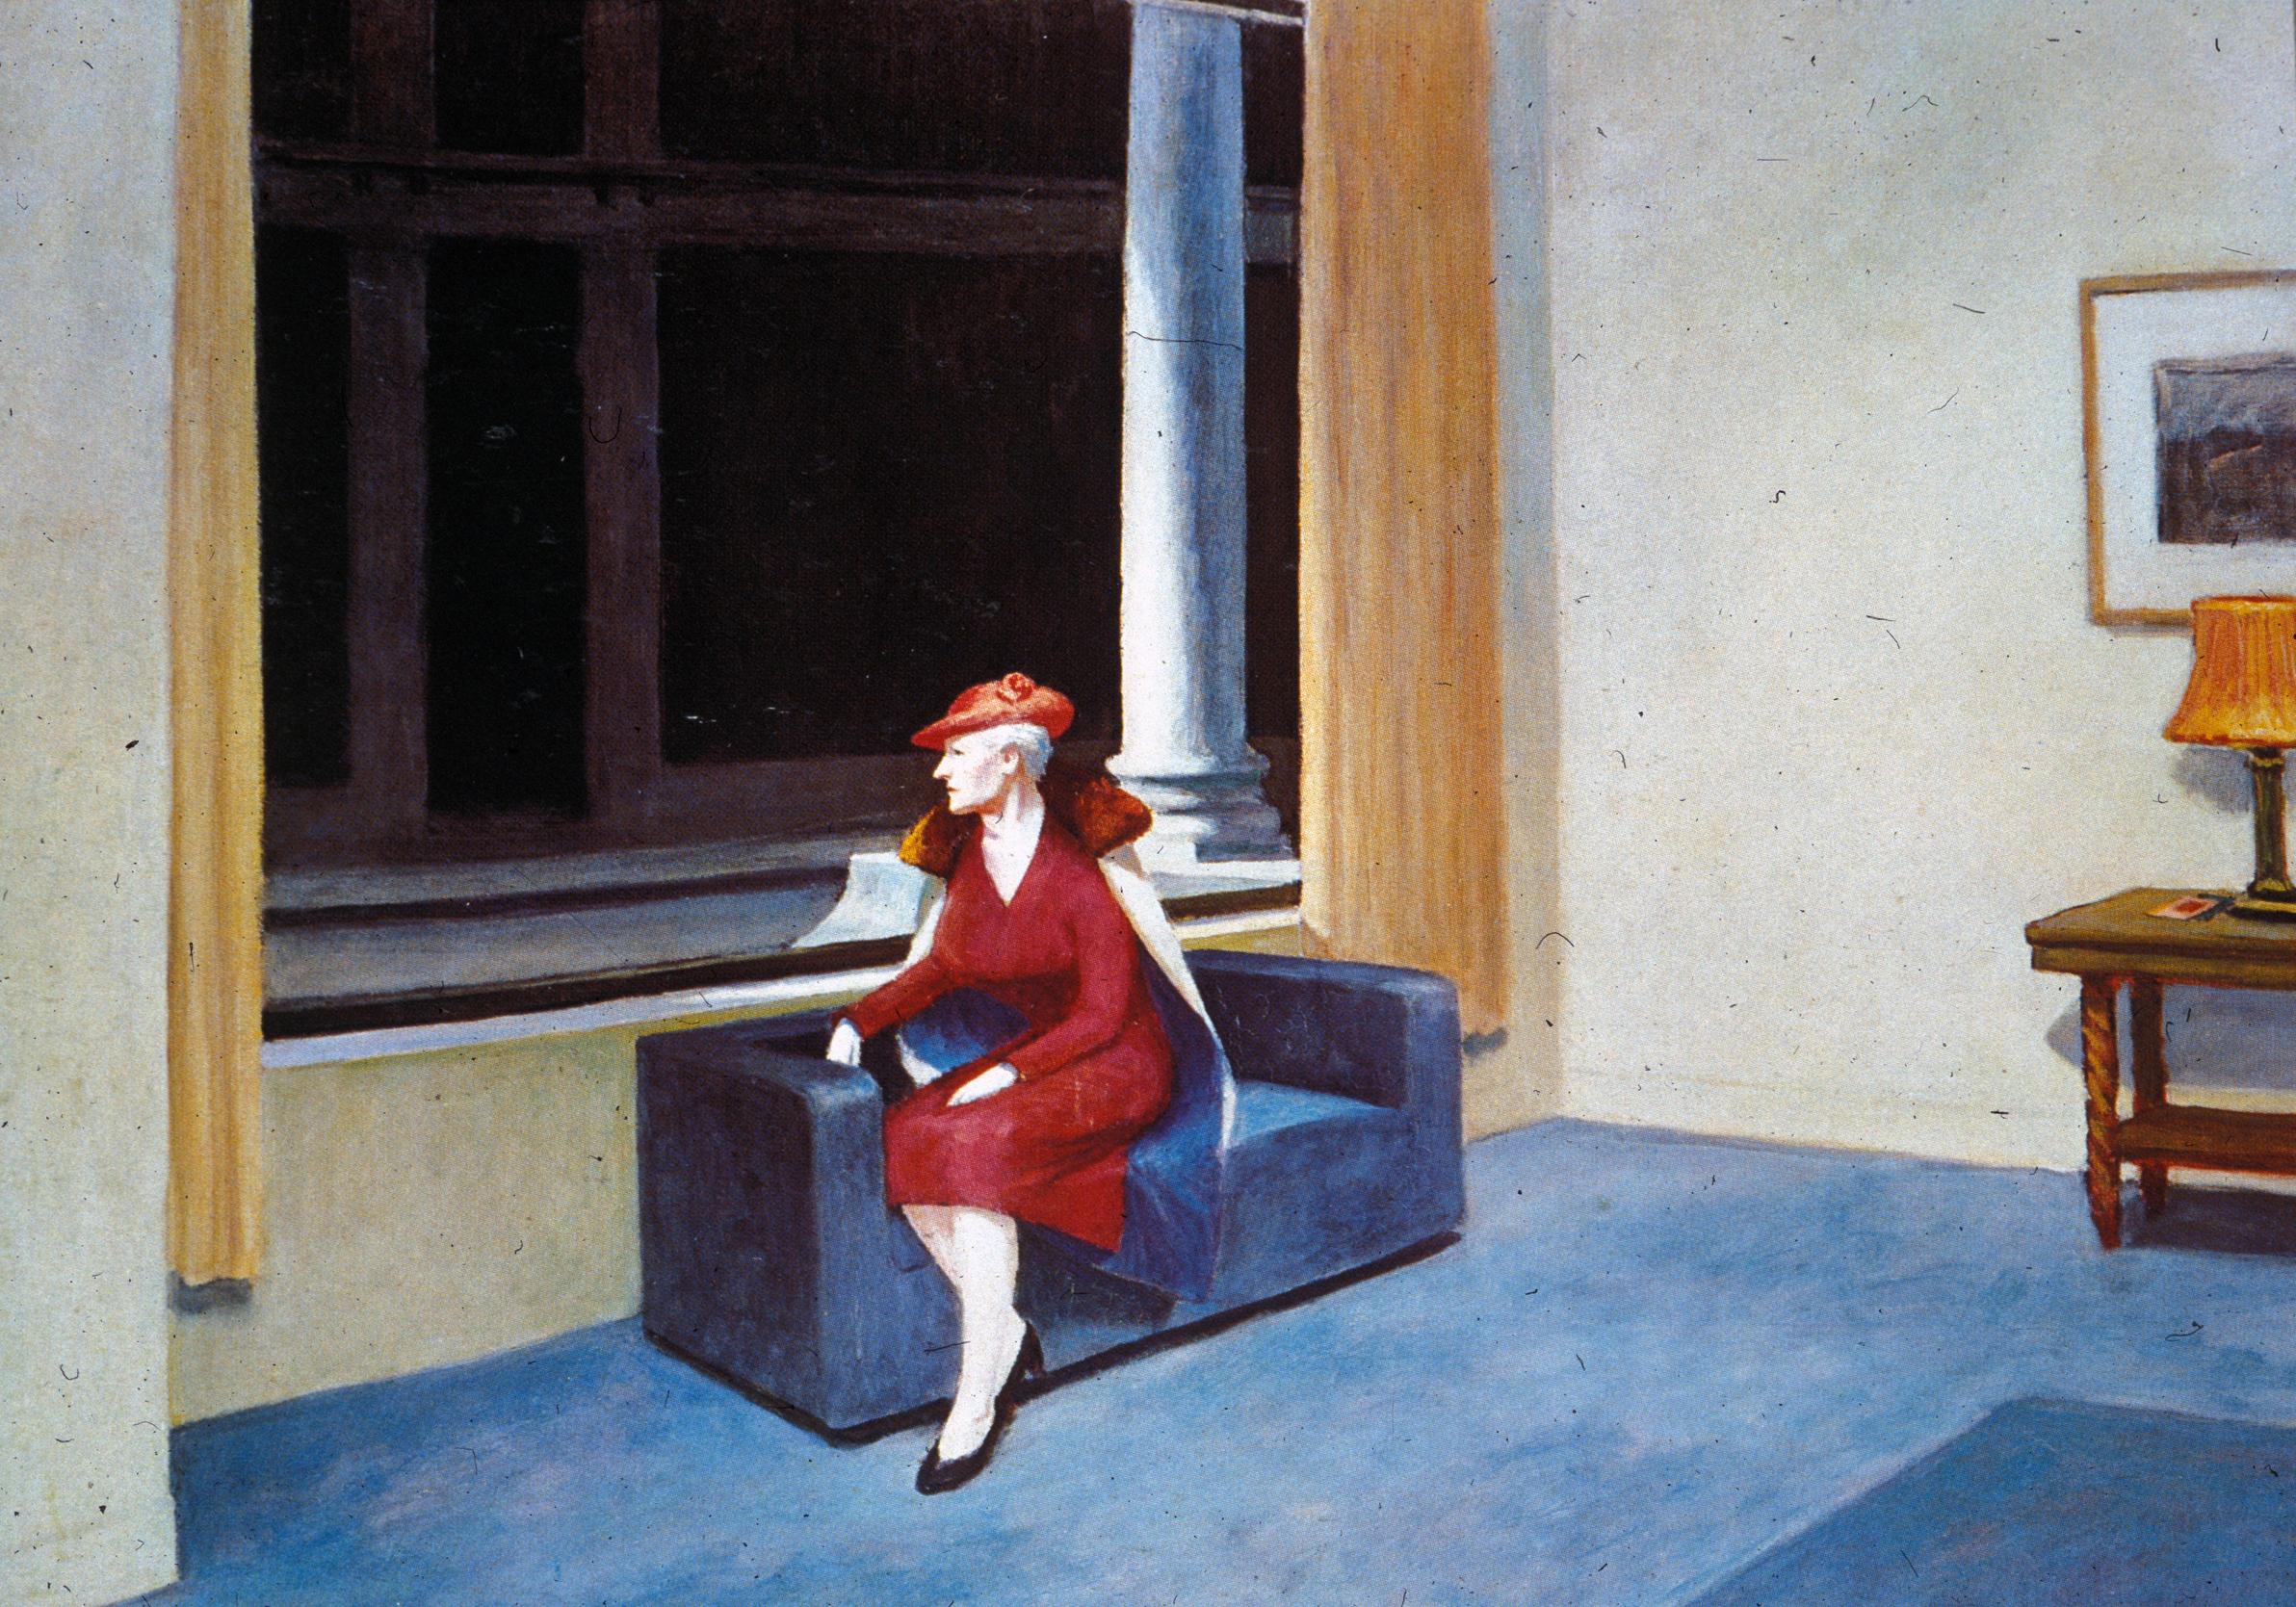 La ventana del hotel by Edward Hopper - 1955 - 101.6 x 139.7 cm Colección privada